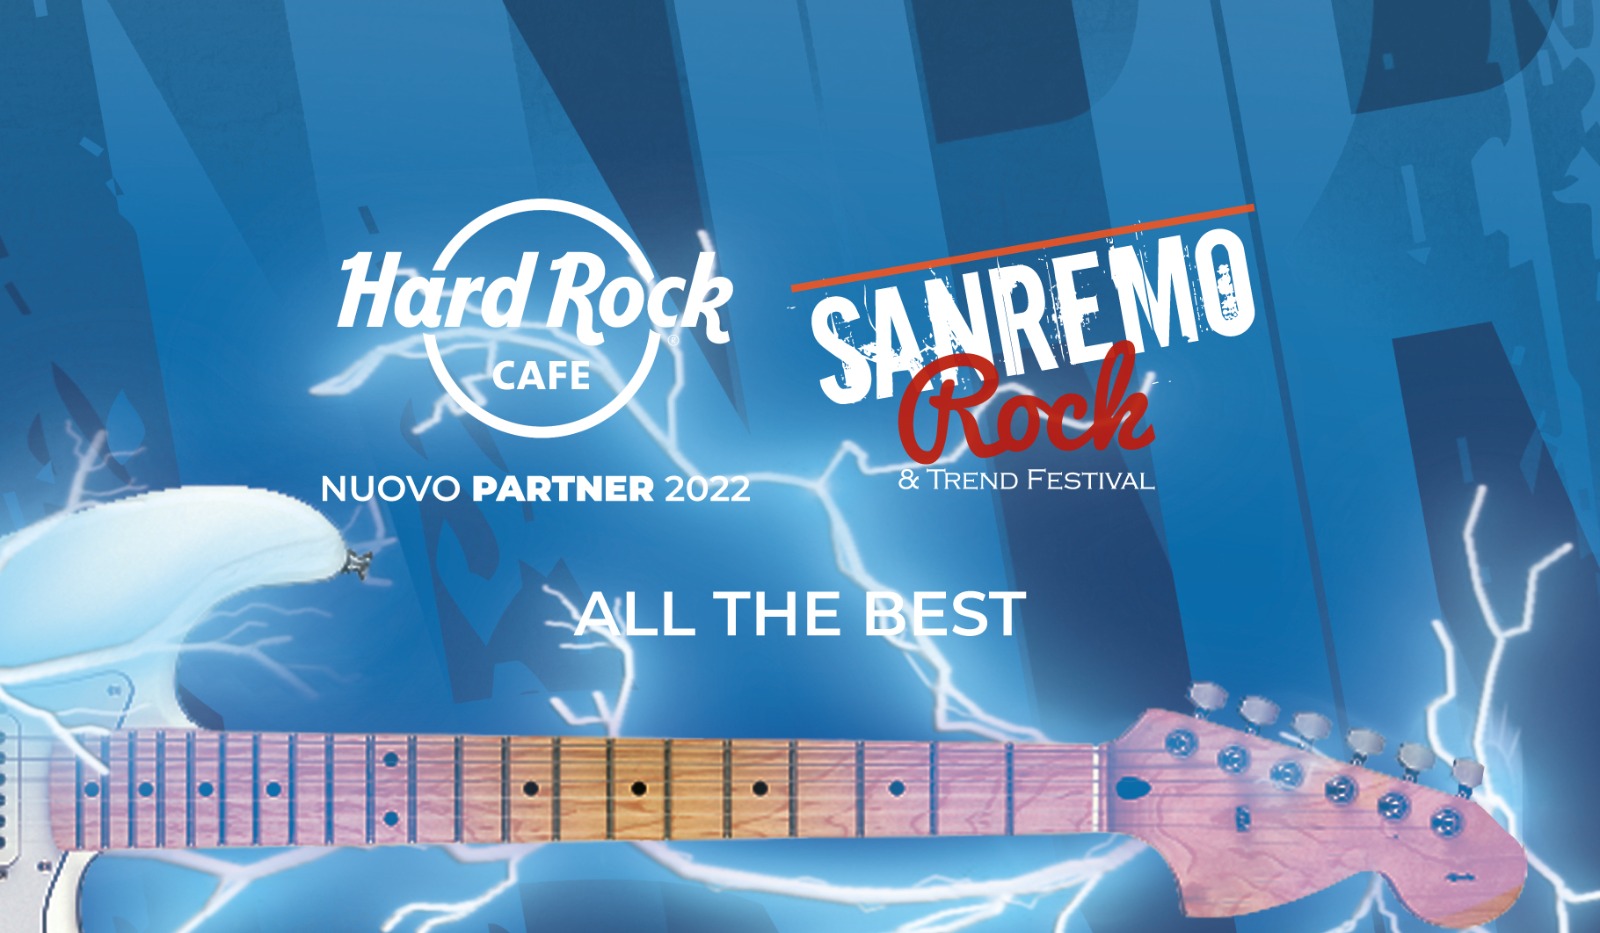 Sanremo Rock Festival le finali toscane sul palco dell’ Hard Rock Cafe di Firenze!